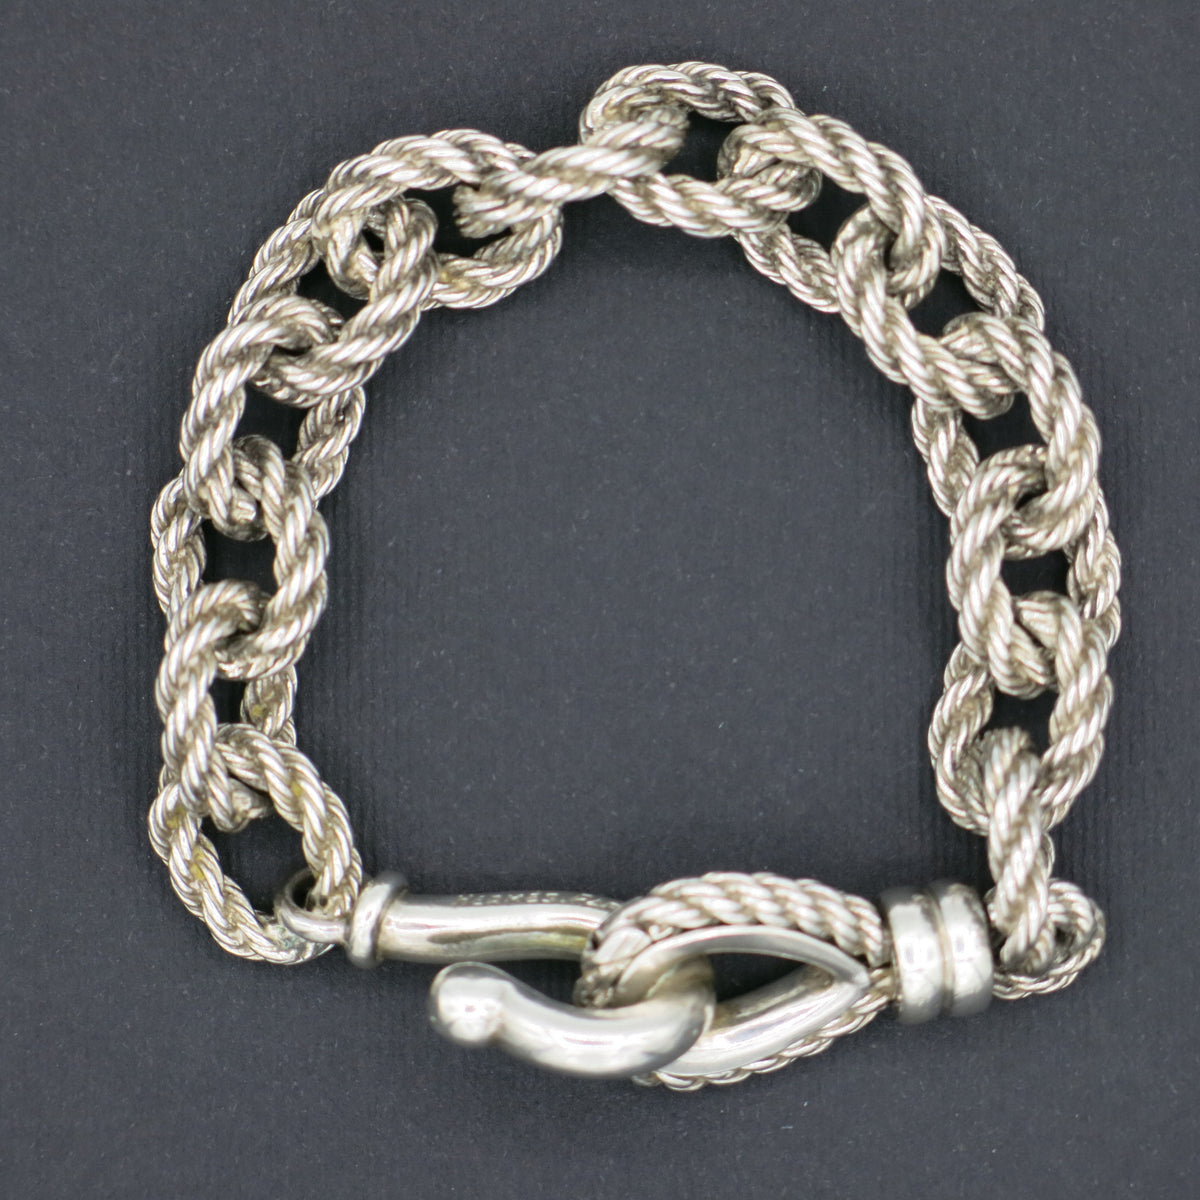 Hermès “Quadrille” bracelet